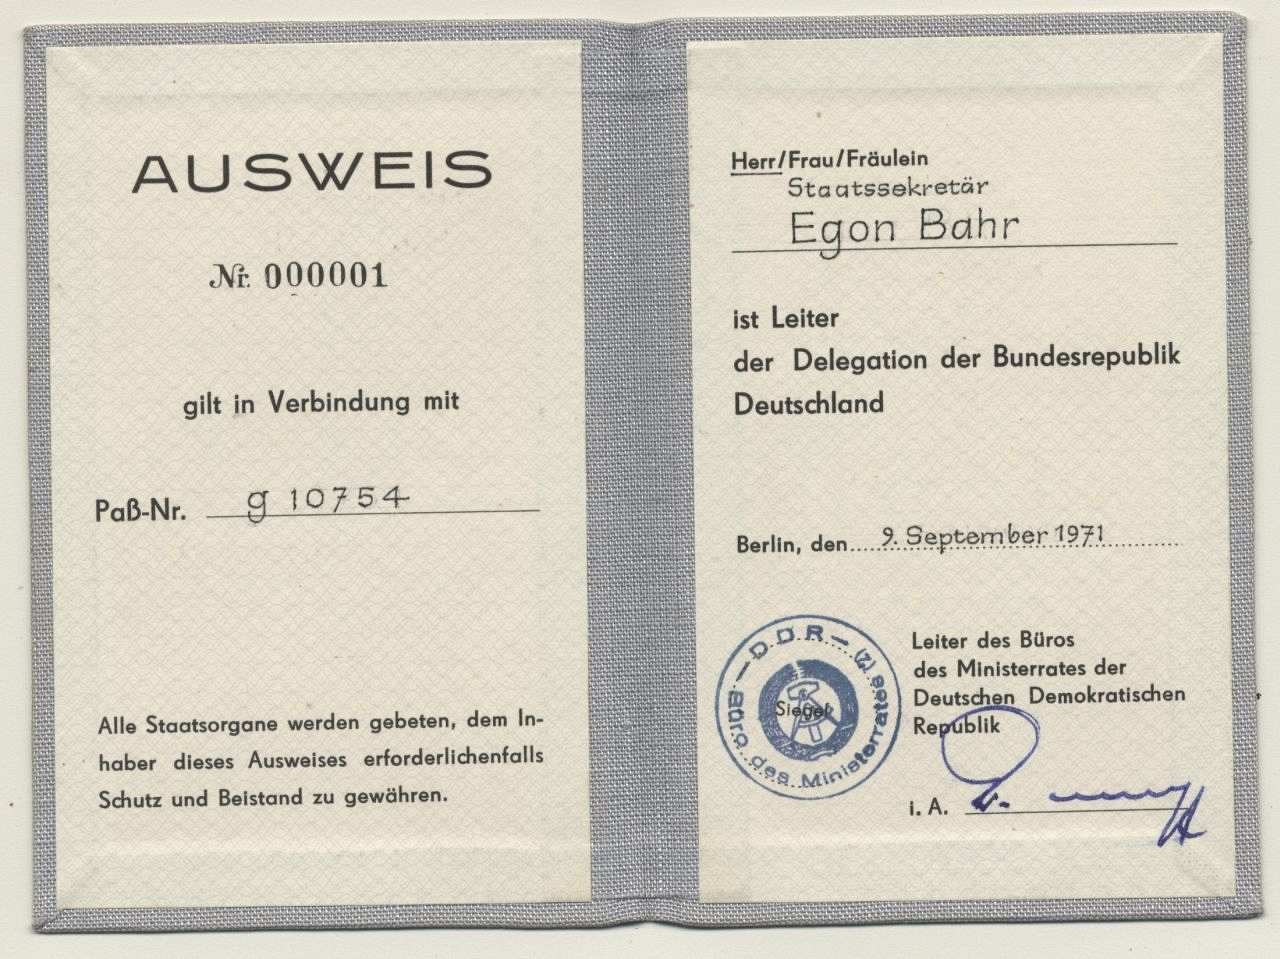 Ausweis mit der Nr. 000001  von Staatssekretär Egon Bahr, Leiter der Delegation der Bundesrepublik  Deutschland; ausgestellt Berlin, den 9. September 1971 vom Leiter des Büros des Ministerrates der Deutschen Demokratischen Republik.